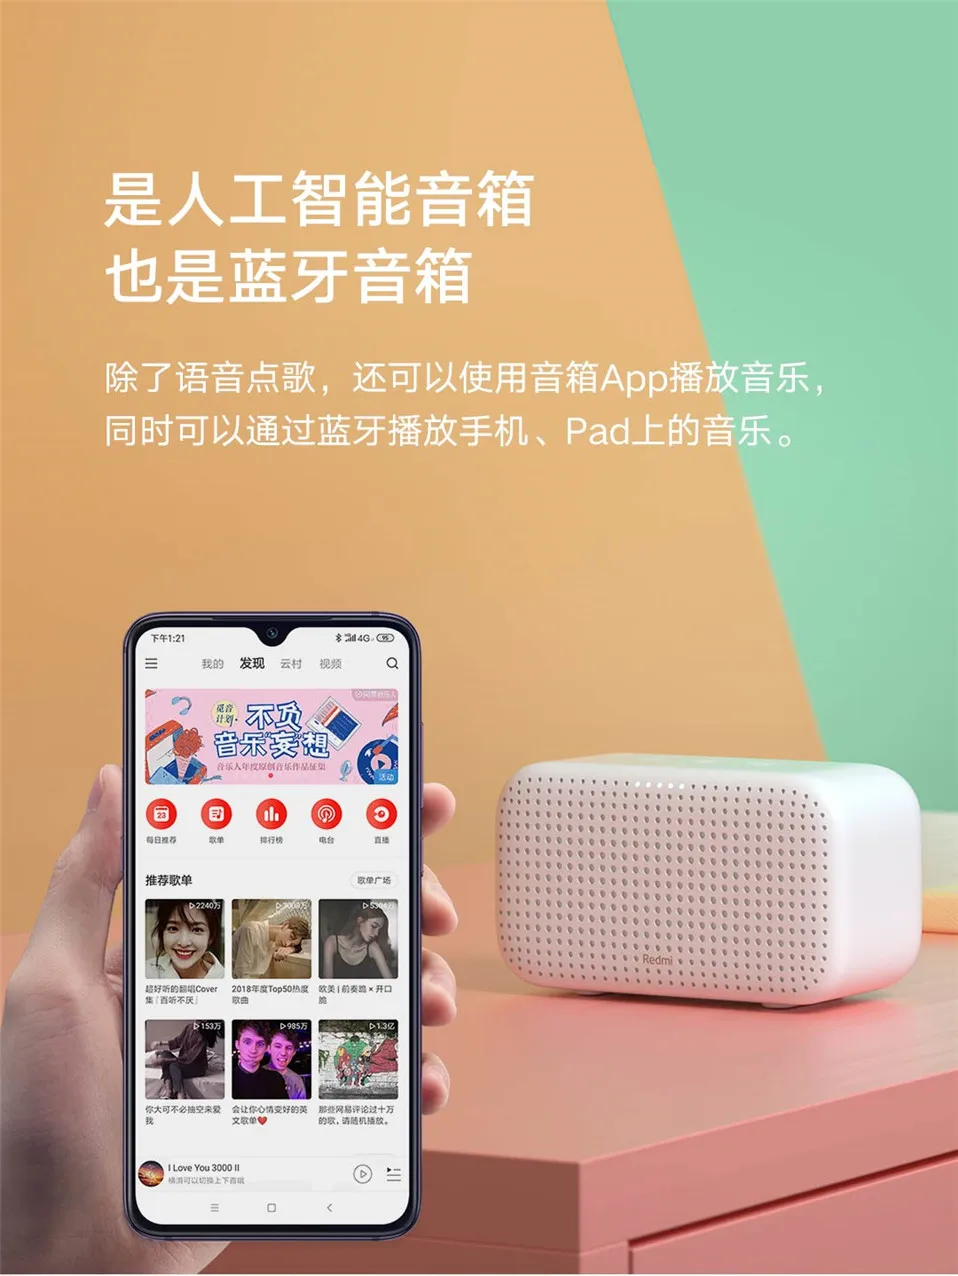 Xiao mi Red mi Xiaoai динамик воспроизведение голоса дистанционное управление Bluetooth 4,2 музыкальный плеер mi динамик для Android iPhone